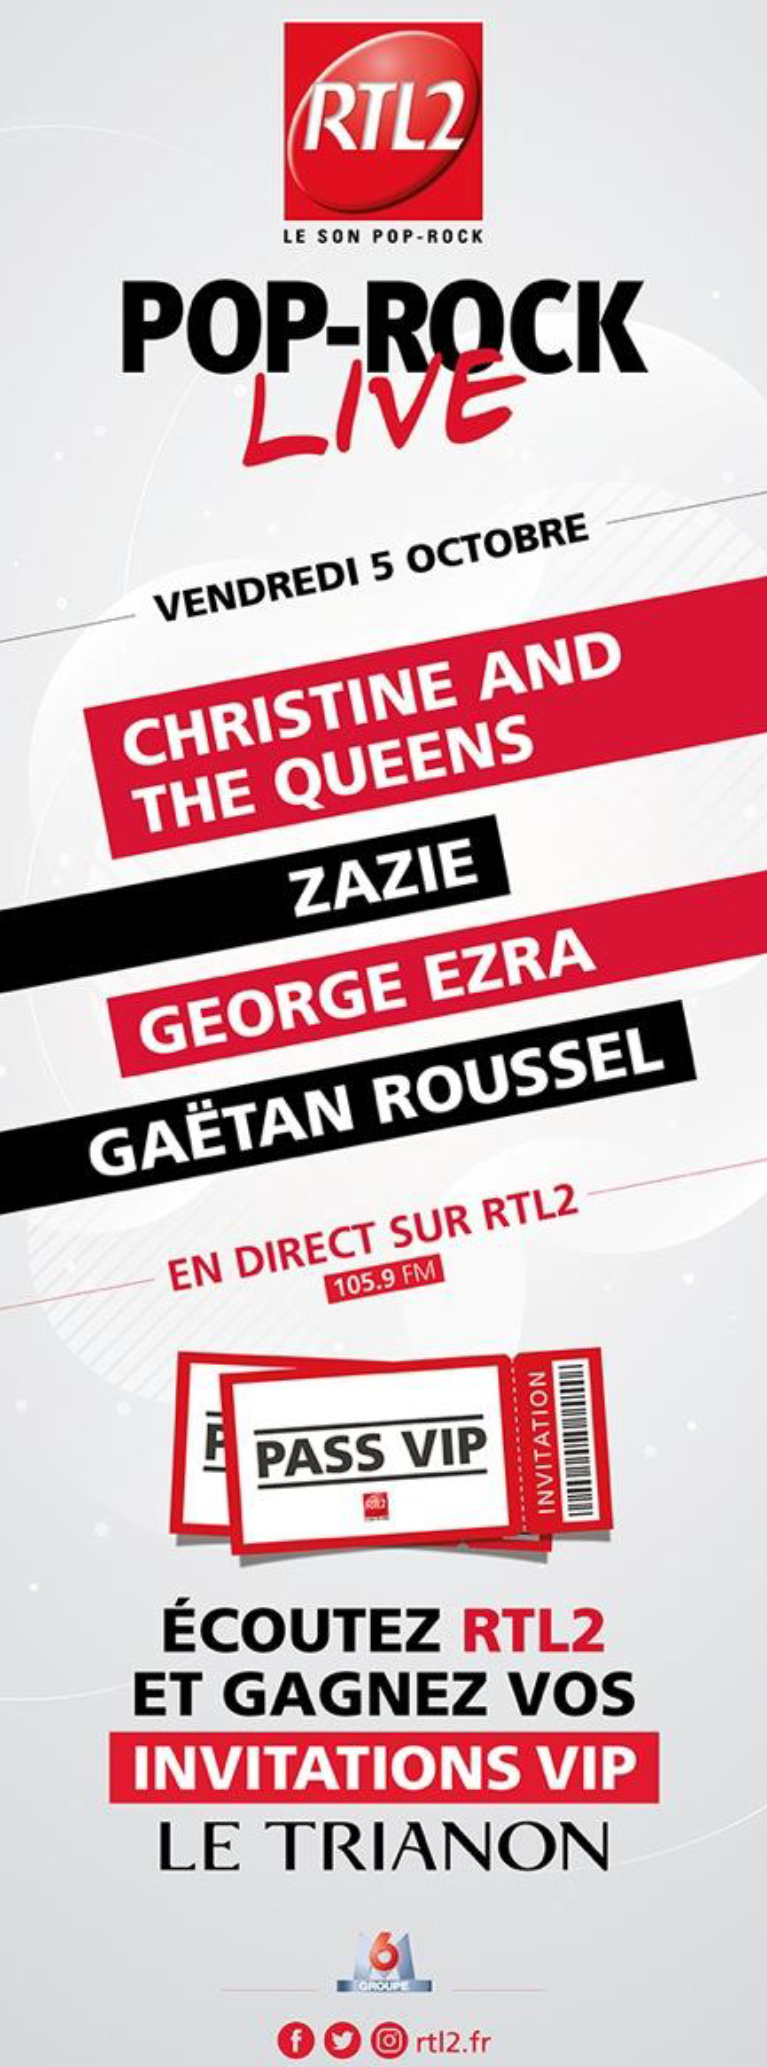 RTL2 lance une campagne pour sa rentrée